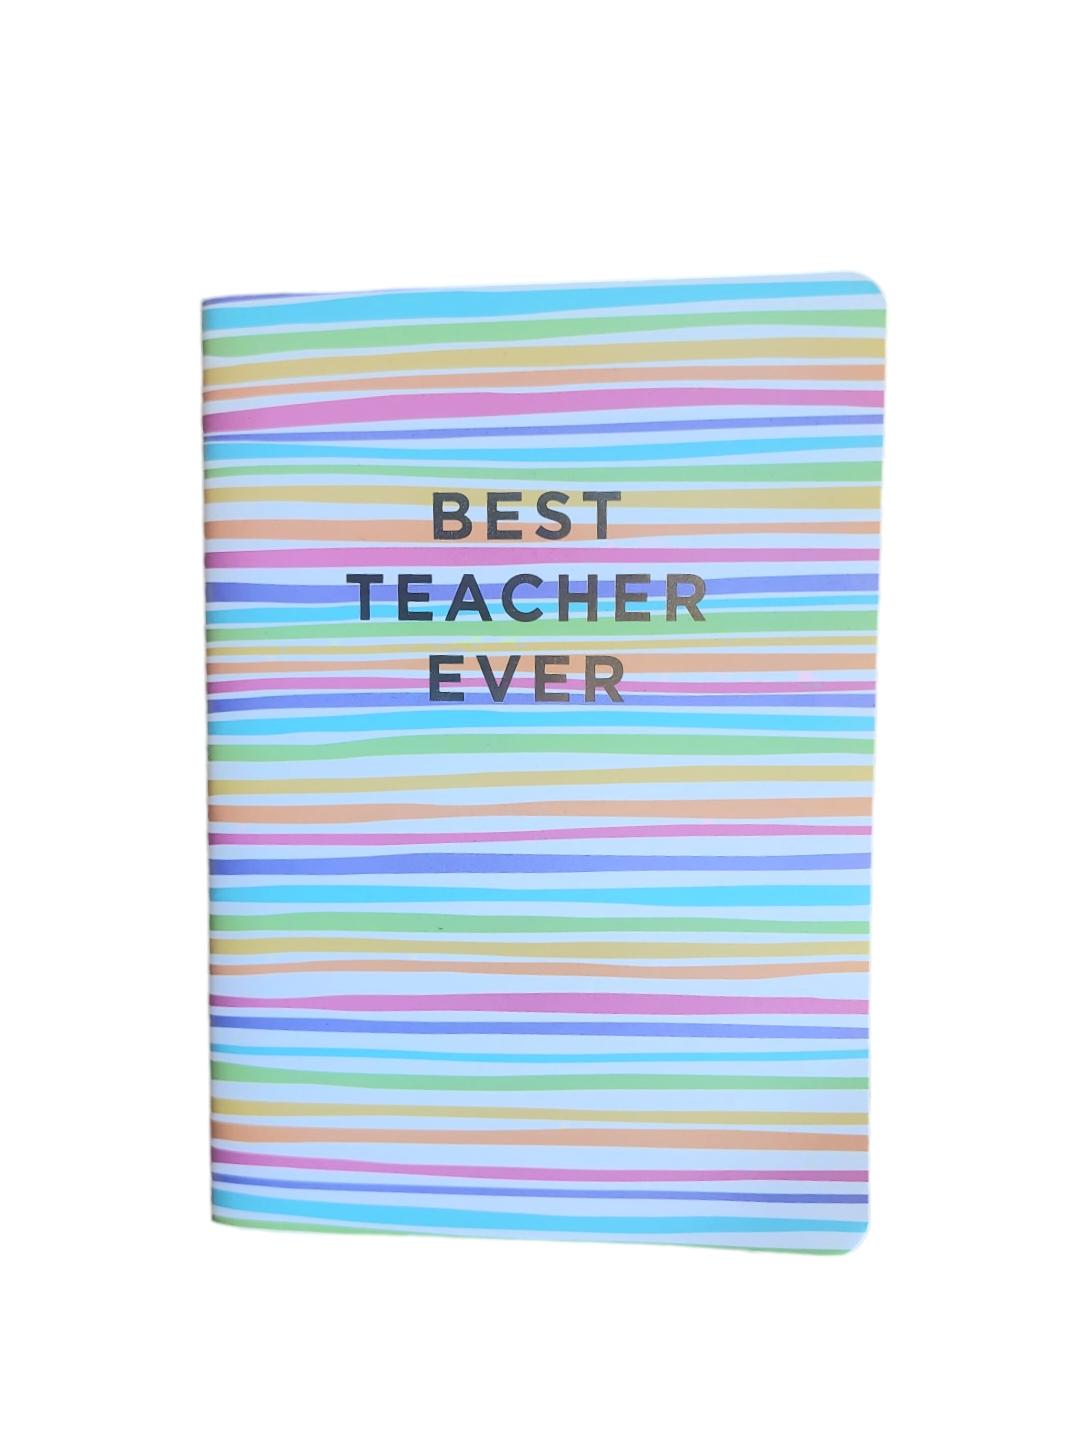 Best Teacher Ever Notebook